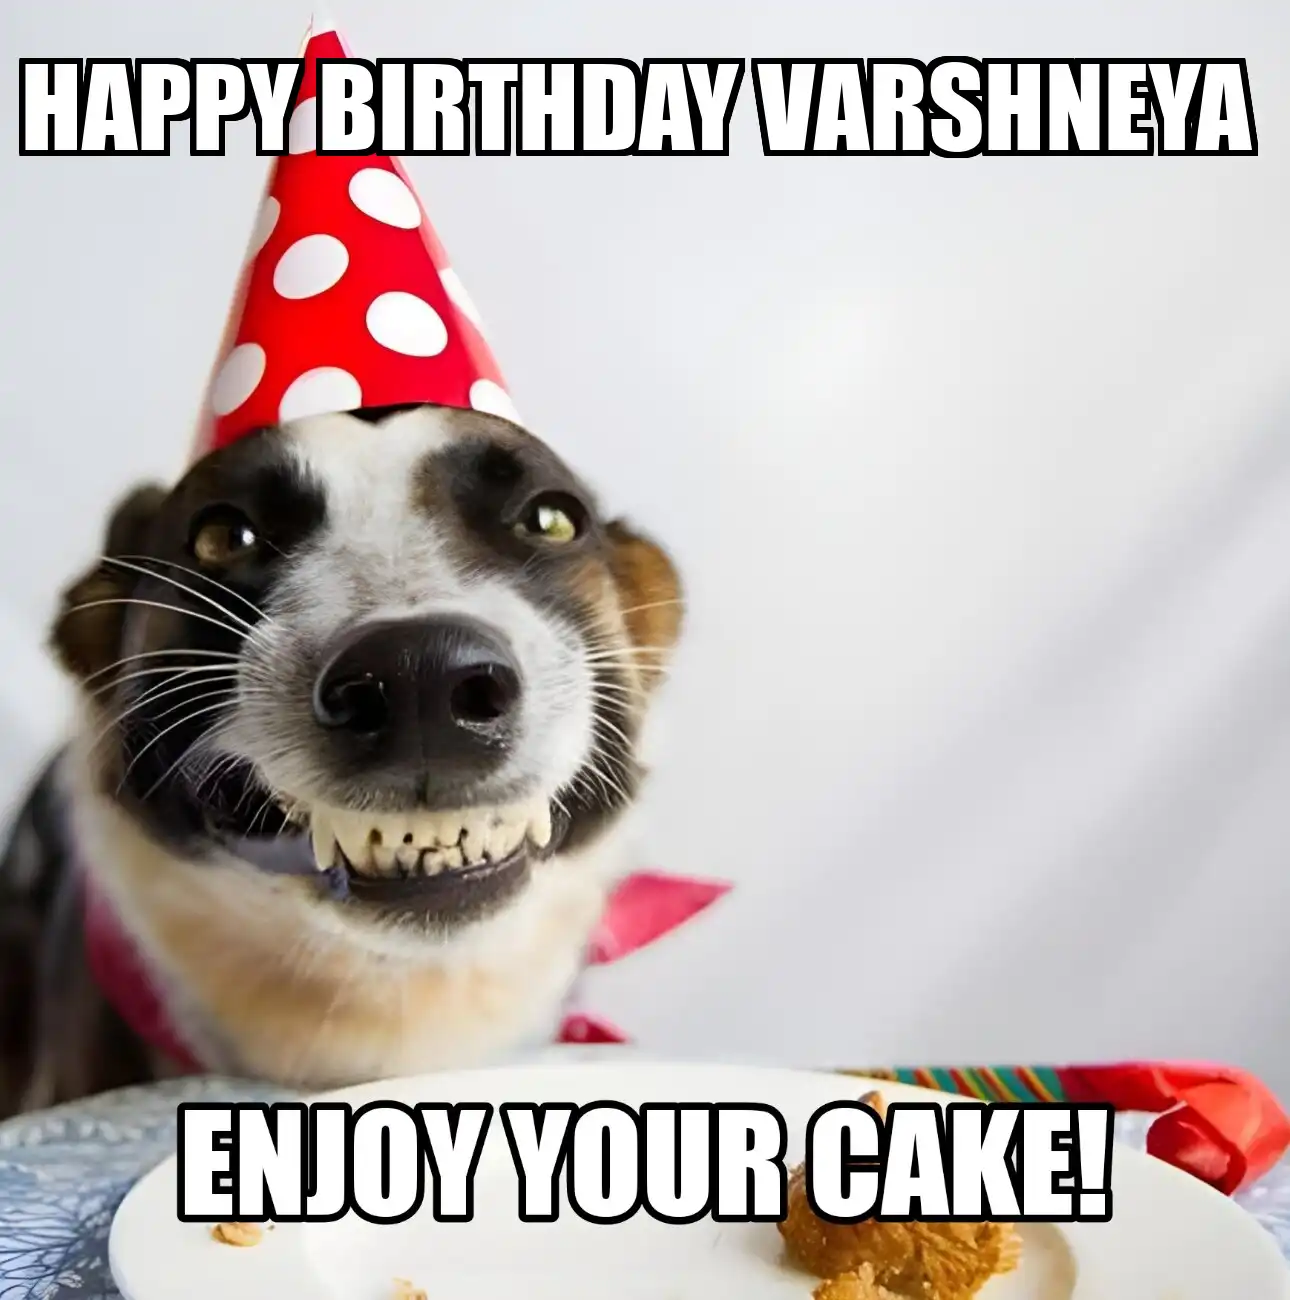 Happy Birthday Varshneya Enjoy Your Cake Dog Meme